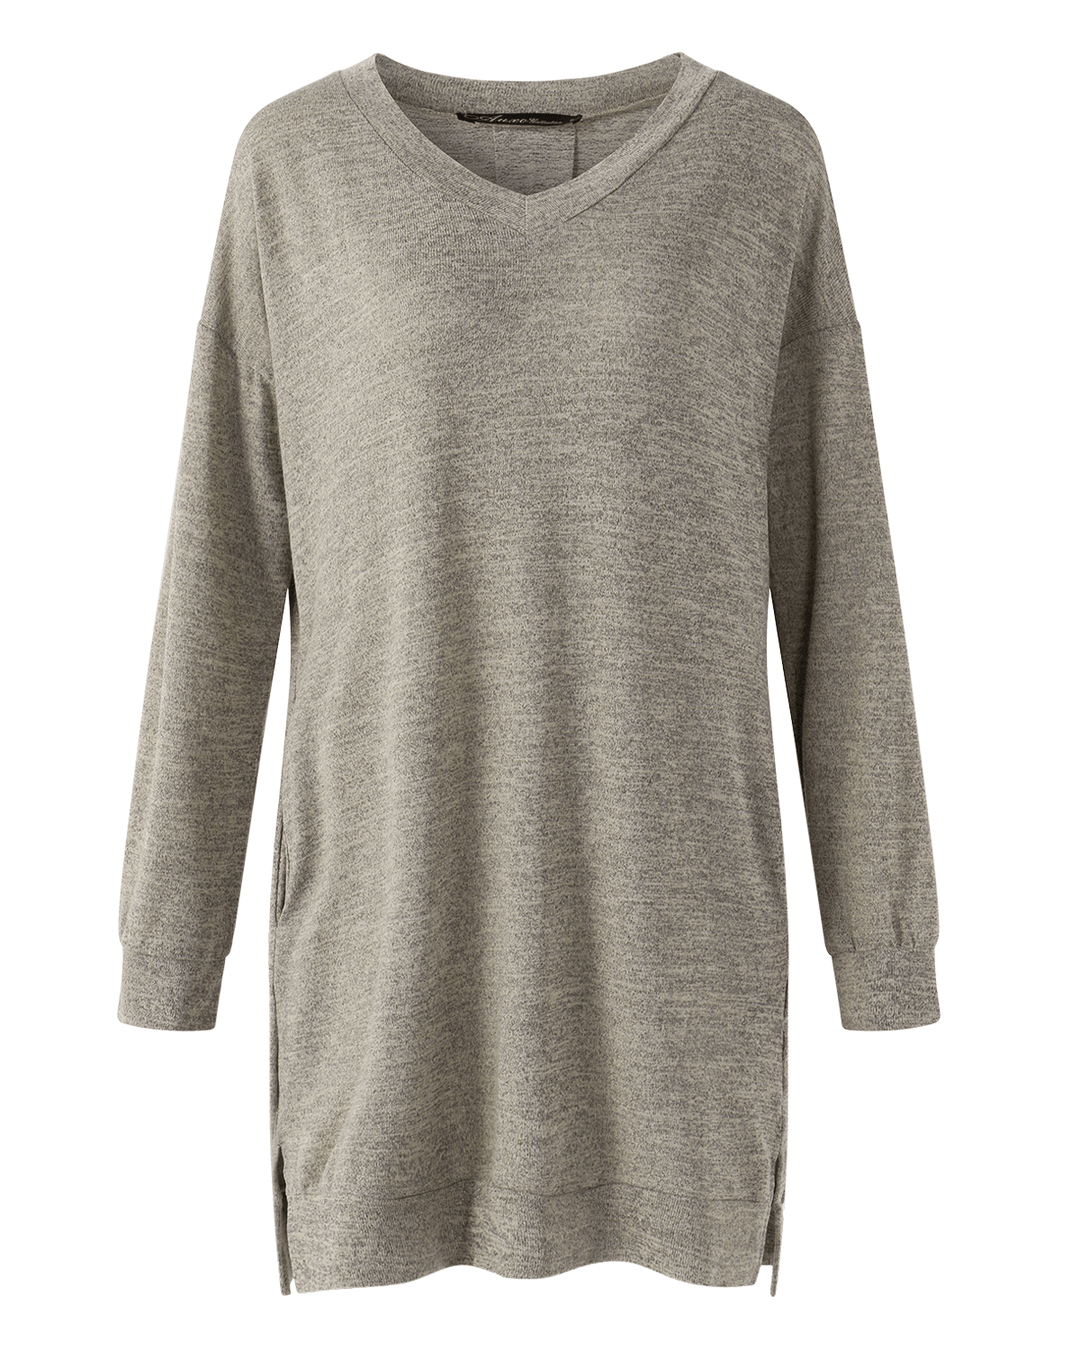 Women Long Sleeve Side Split Loose Casual Pullover Sweatshirt Dress with Pockets - MRSLM